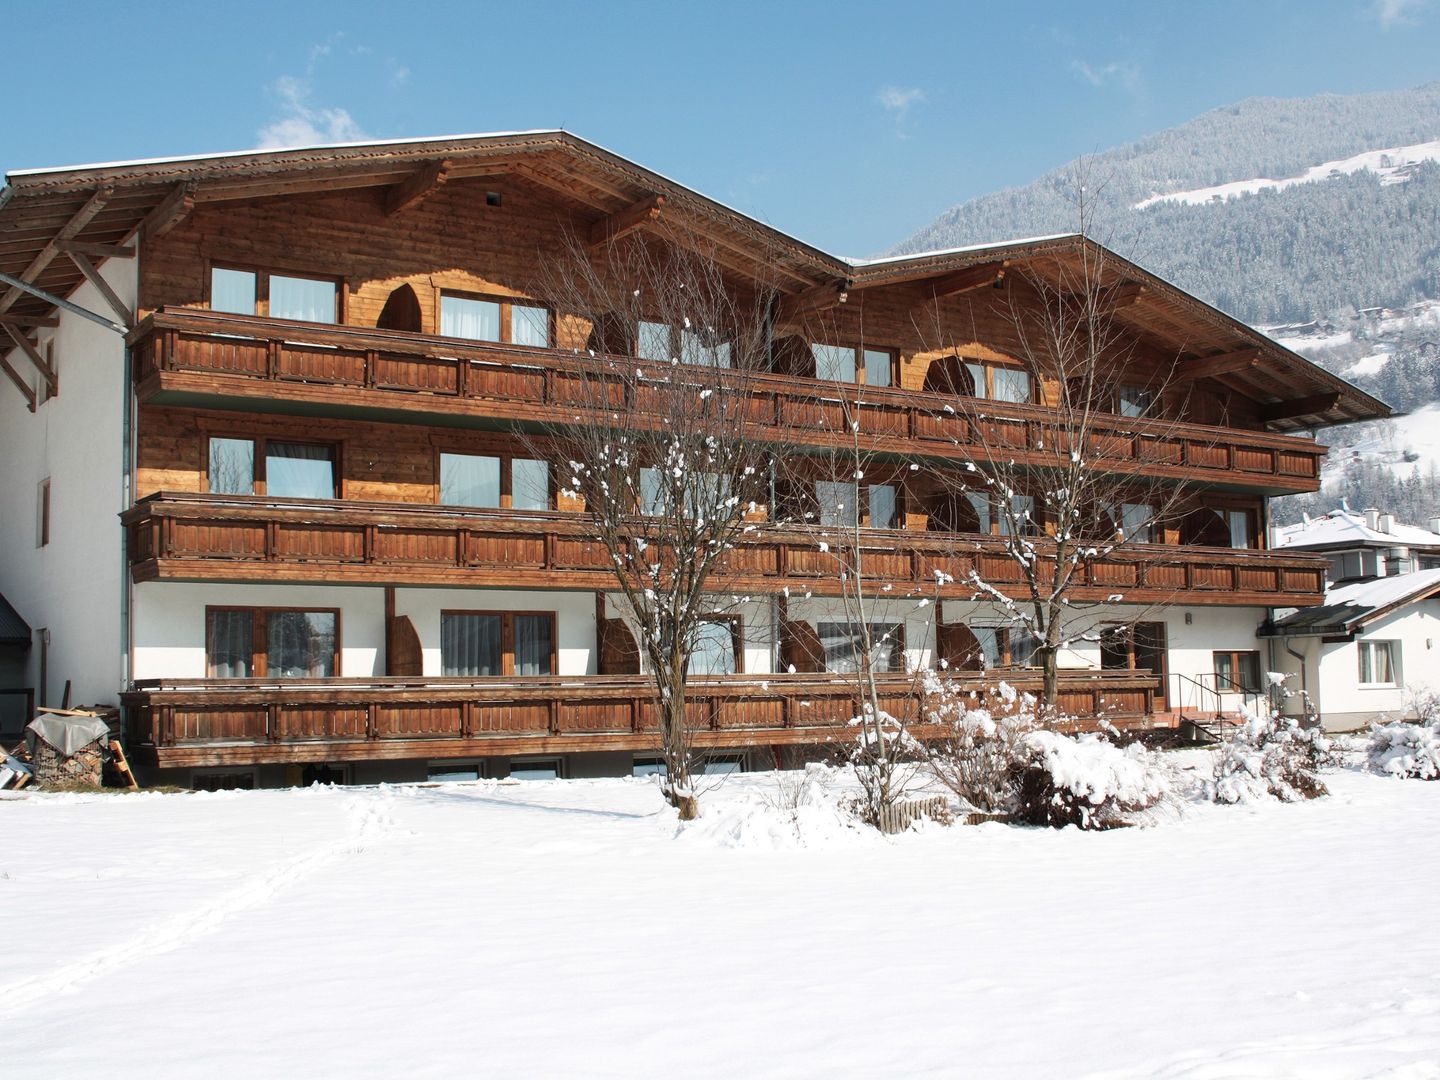 Meer info over first mountain Hotel Zillertal  bij Wintertrex